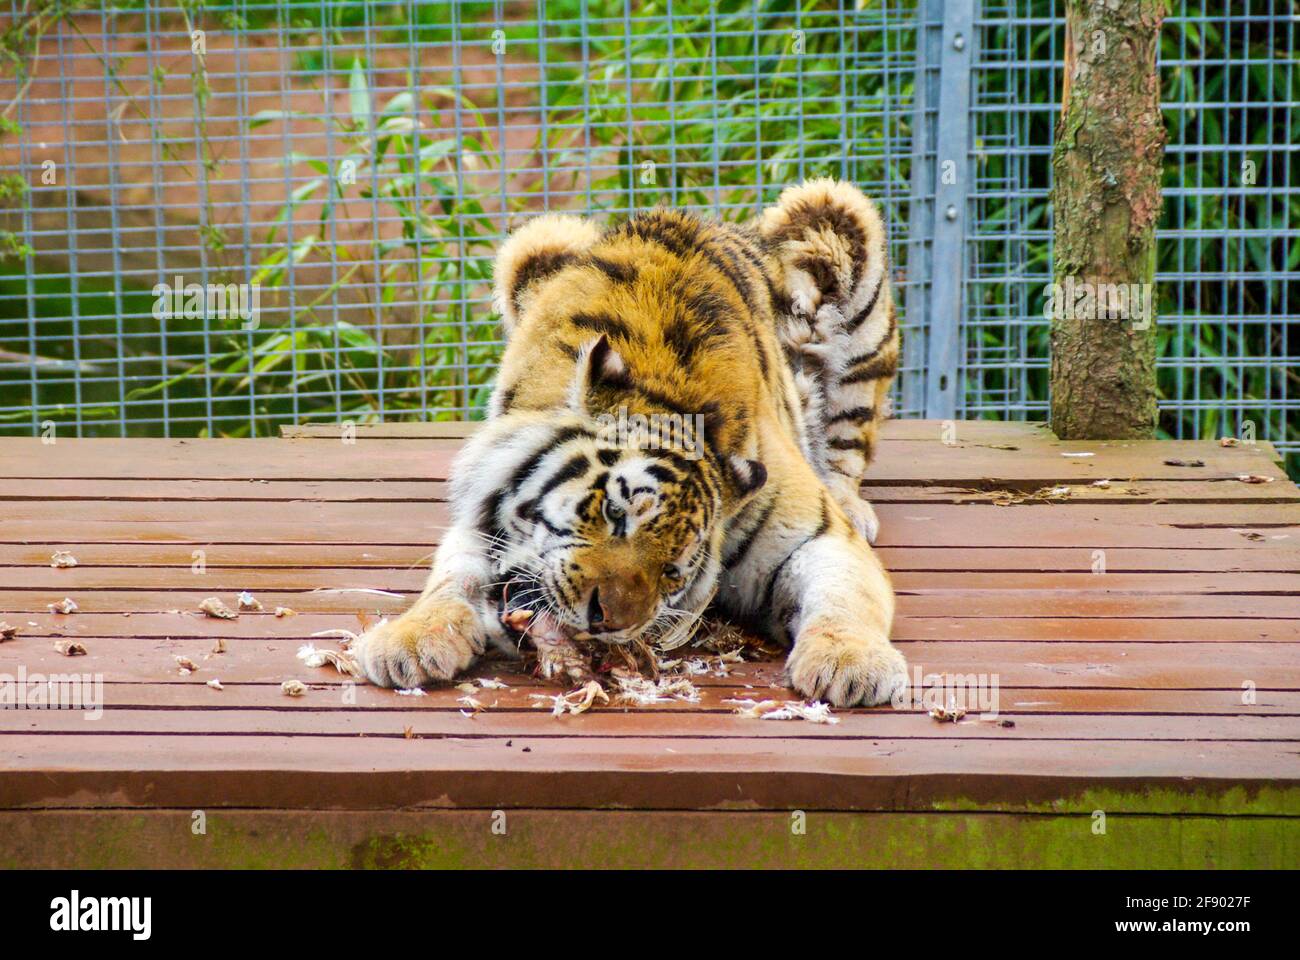 Tiger au zoo de South Lakes Safari, anciennement Parc animalier de South Lakes. En 2013, un tigre mauvait un employé du zoo. Temps d'alimentation. Manger de la nourriture Banque D'Images